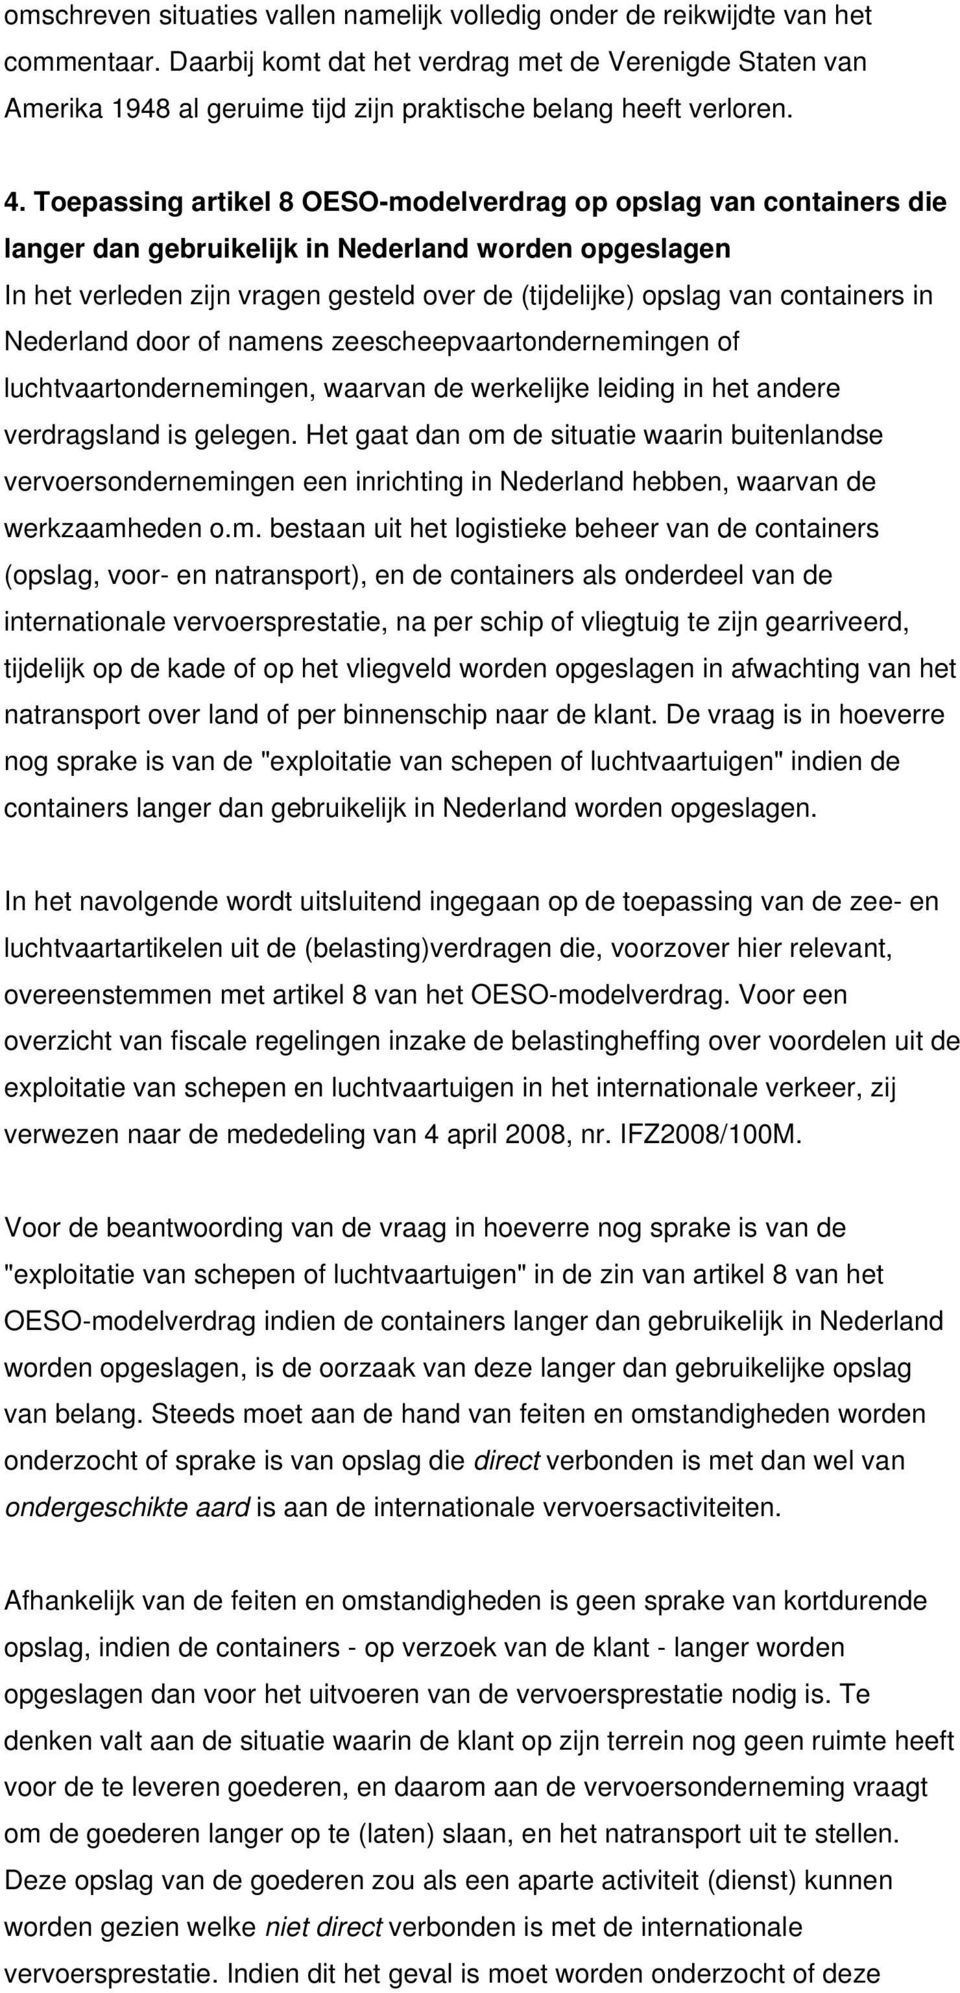 Toepassing artikel 8 OESO-modelverdrag op opslag van containers die langer dan gebruikelijk in Nederland worden opgeslagen In het verleden zijn vragen gesteld over de (tijdelijke) opslag van